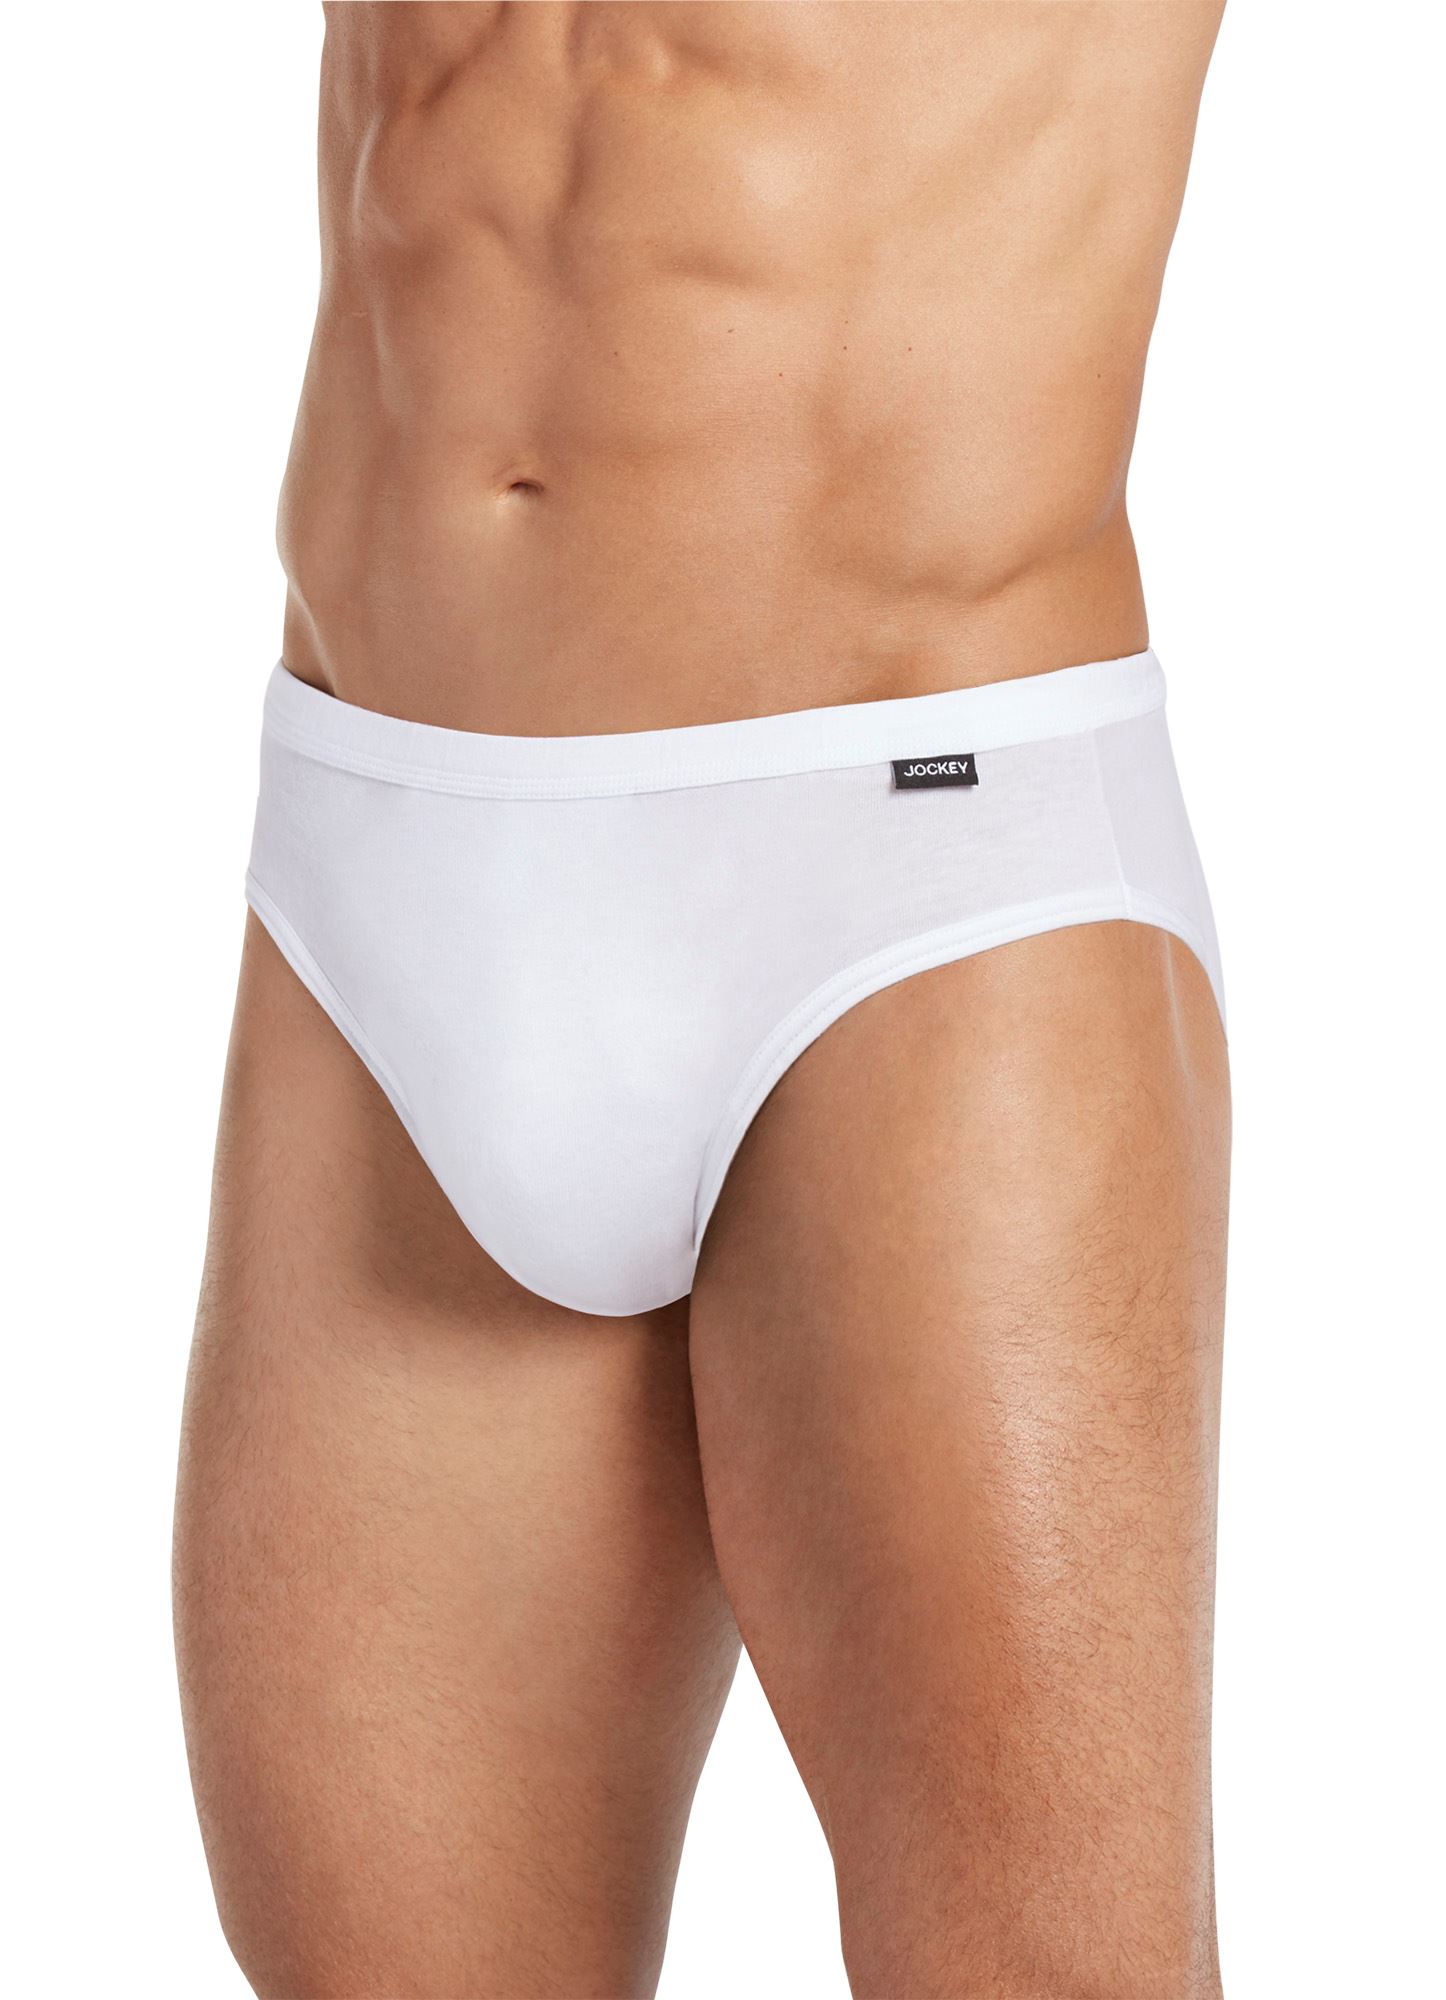 Jockey Elance® Brief Underwear, 3 pk - Kroger